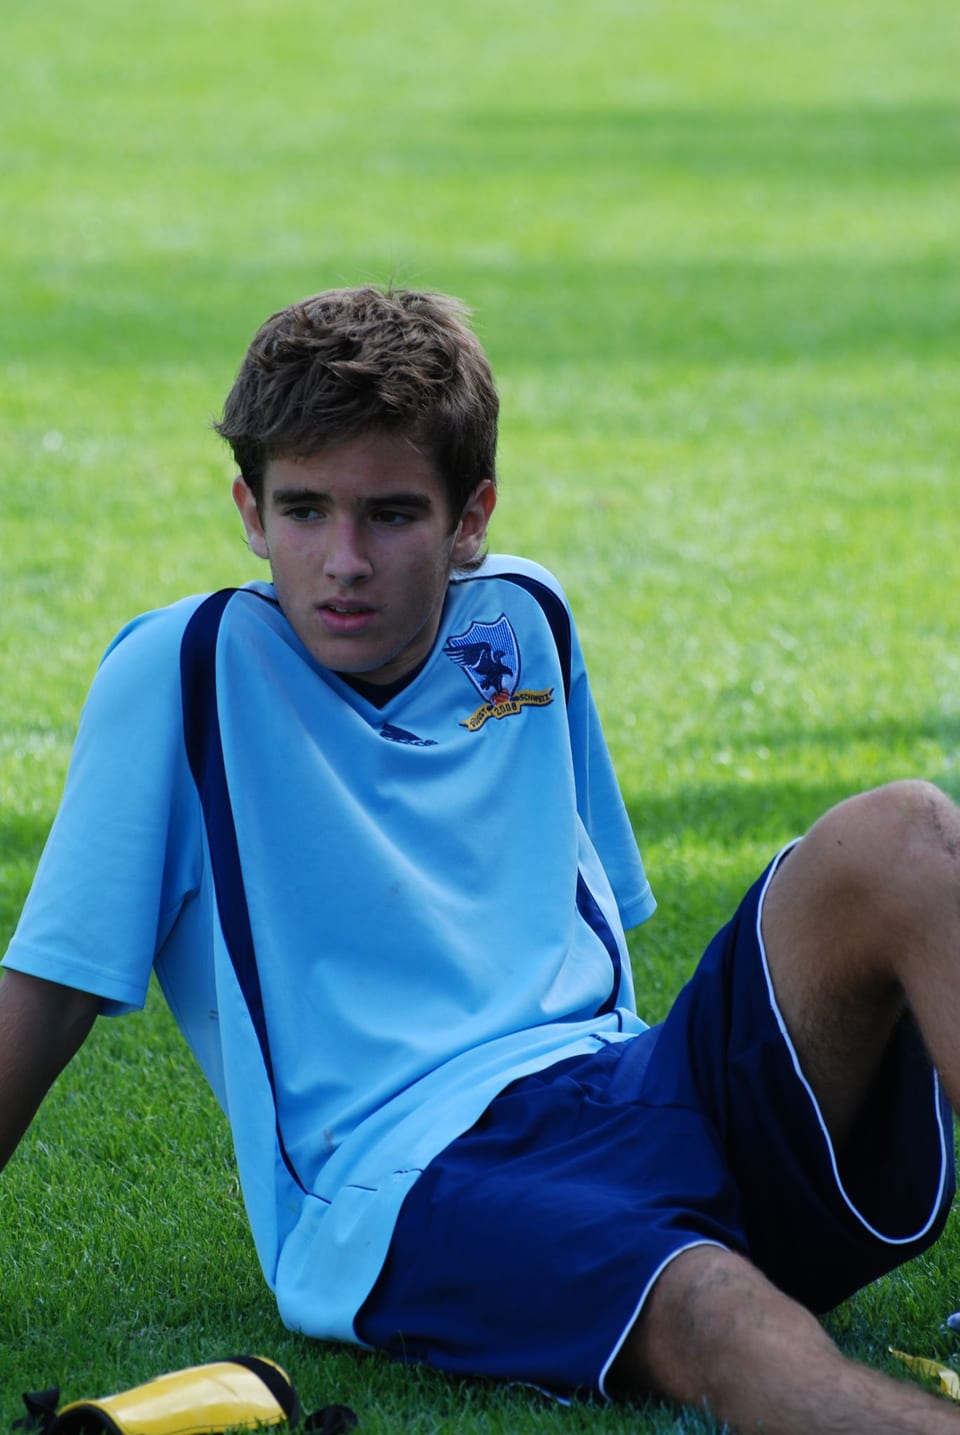 Rafael als junger fussballer auf dem spielfeld sitzend